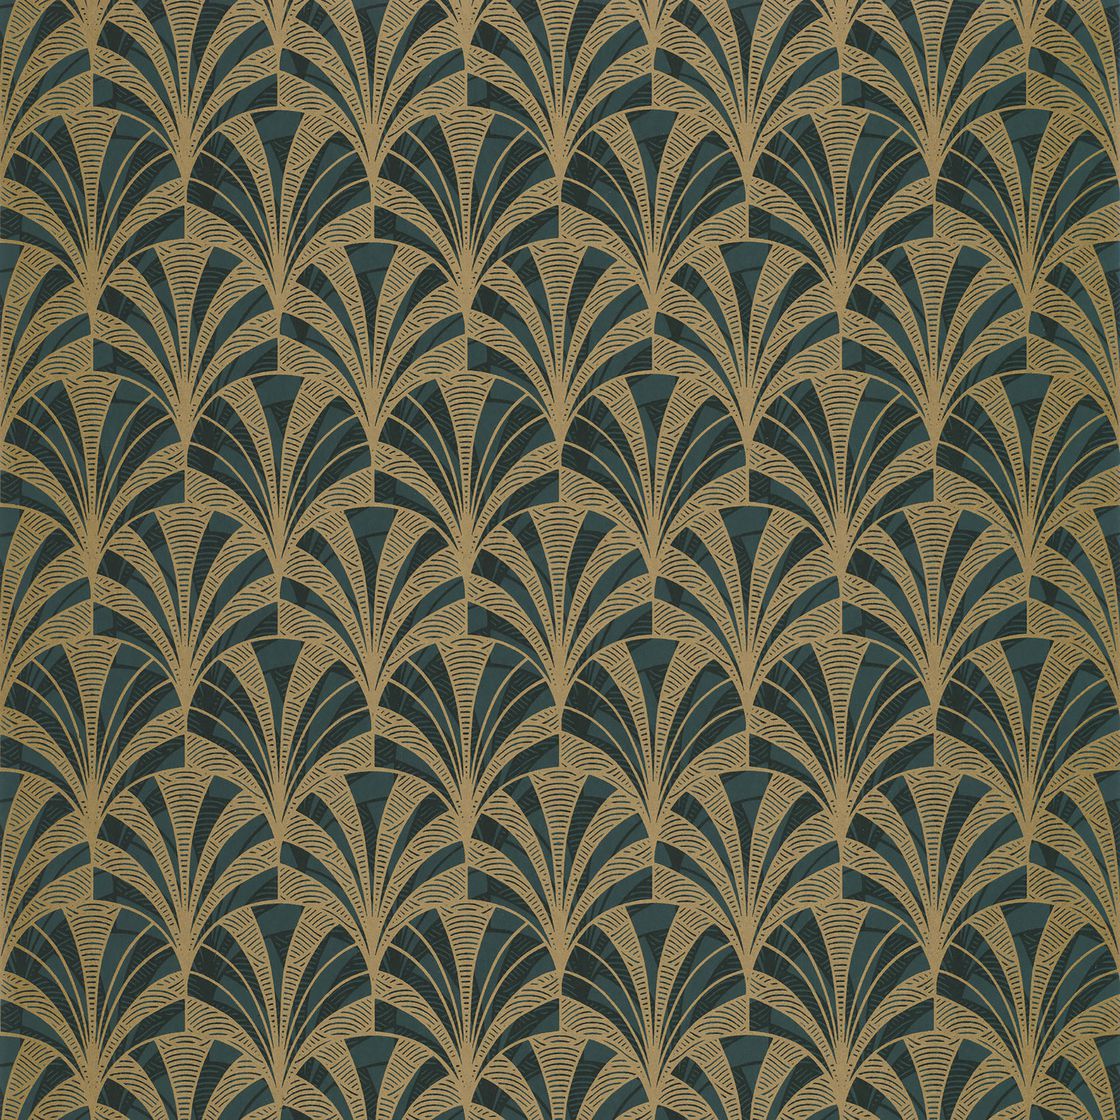 Palmette Wallpaper